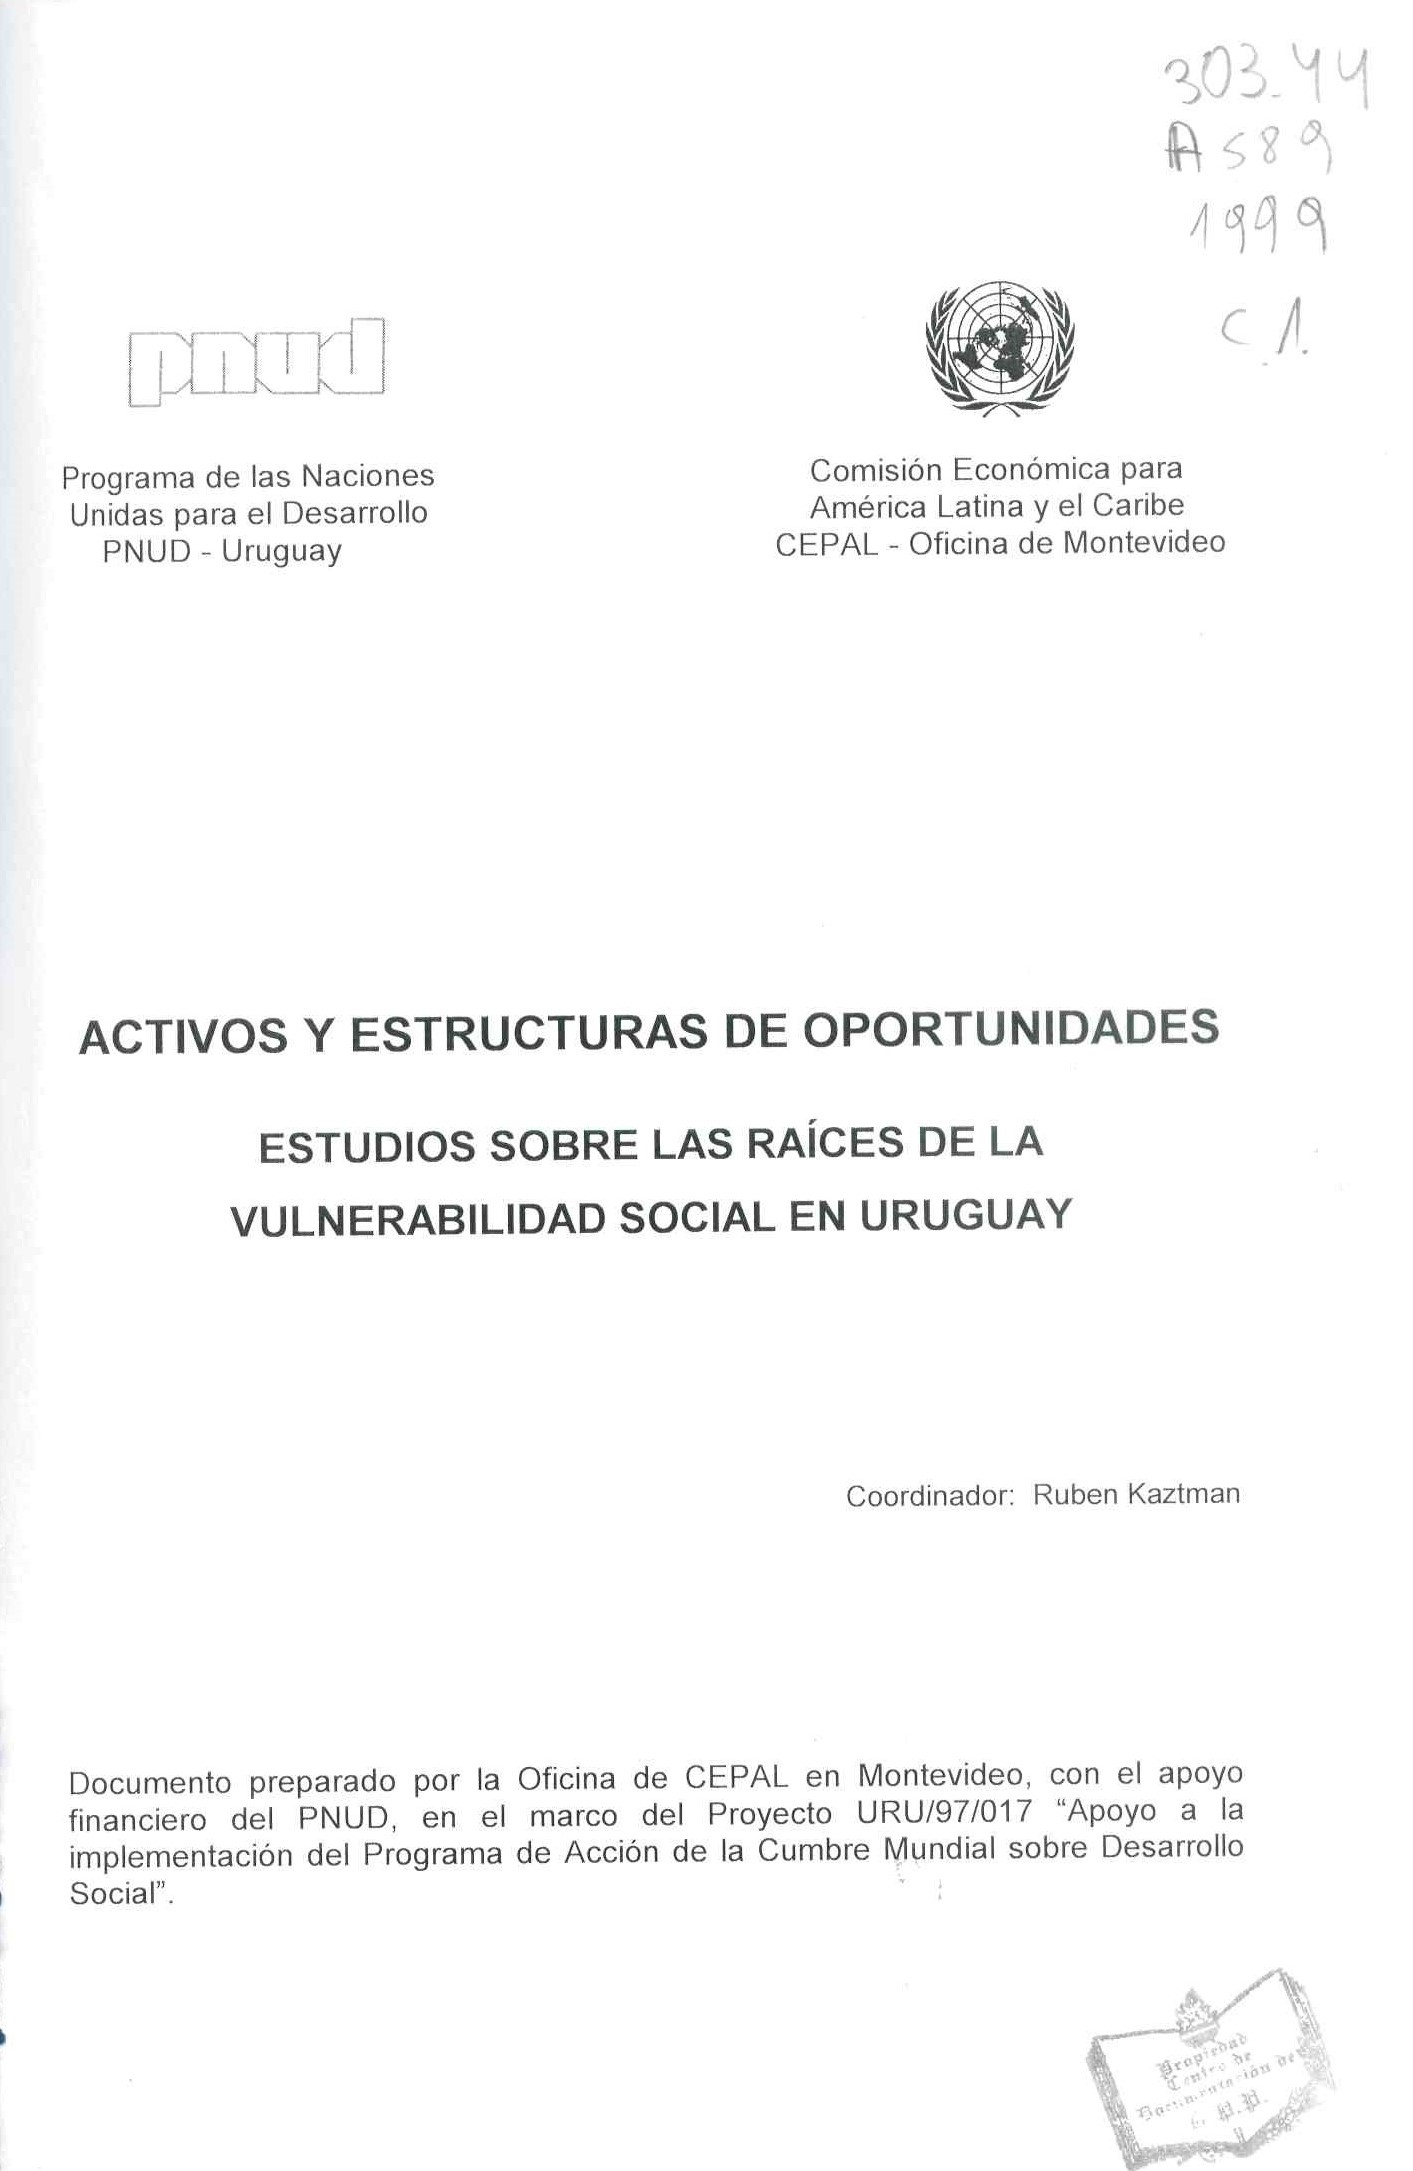 Activos y estructuras de oportunidades: Estudios sobre las raíces de la vulnerabilidad social en el Uruguay